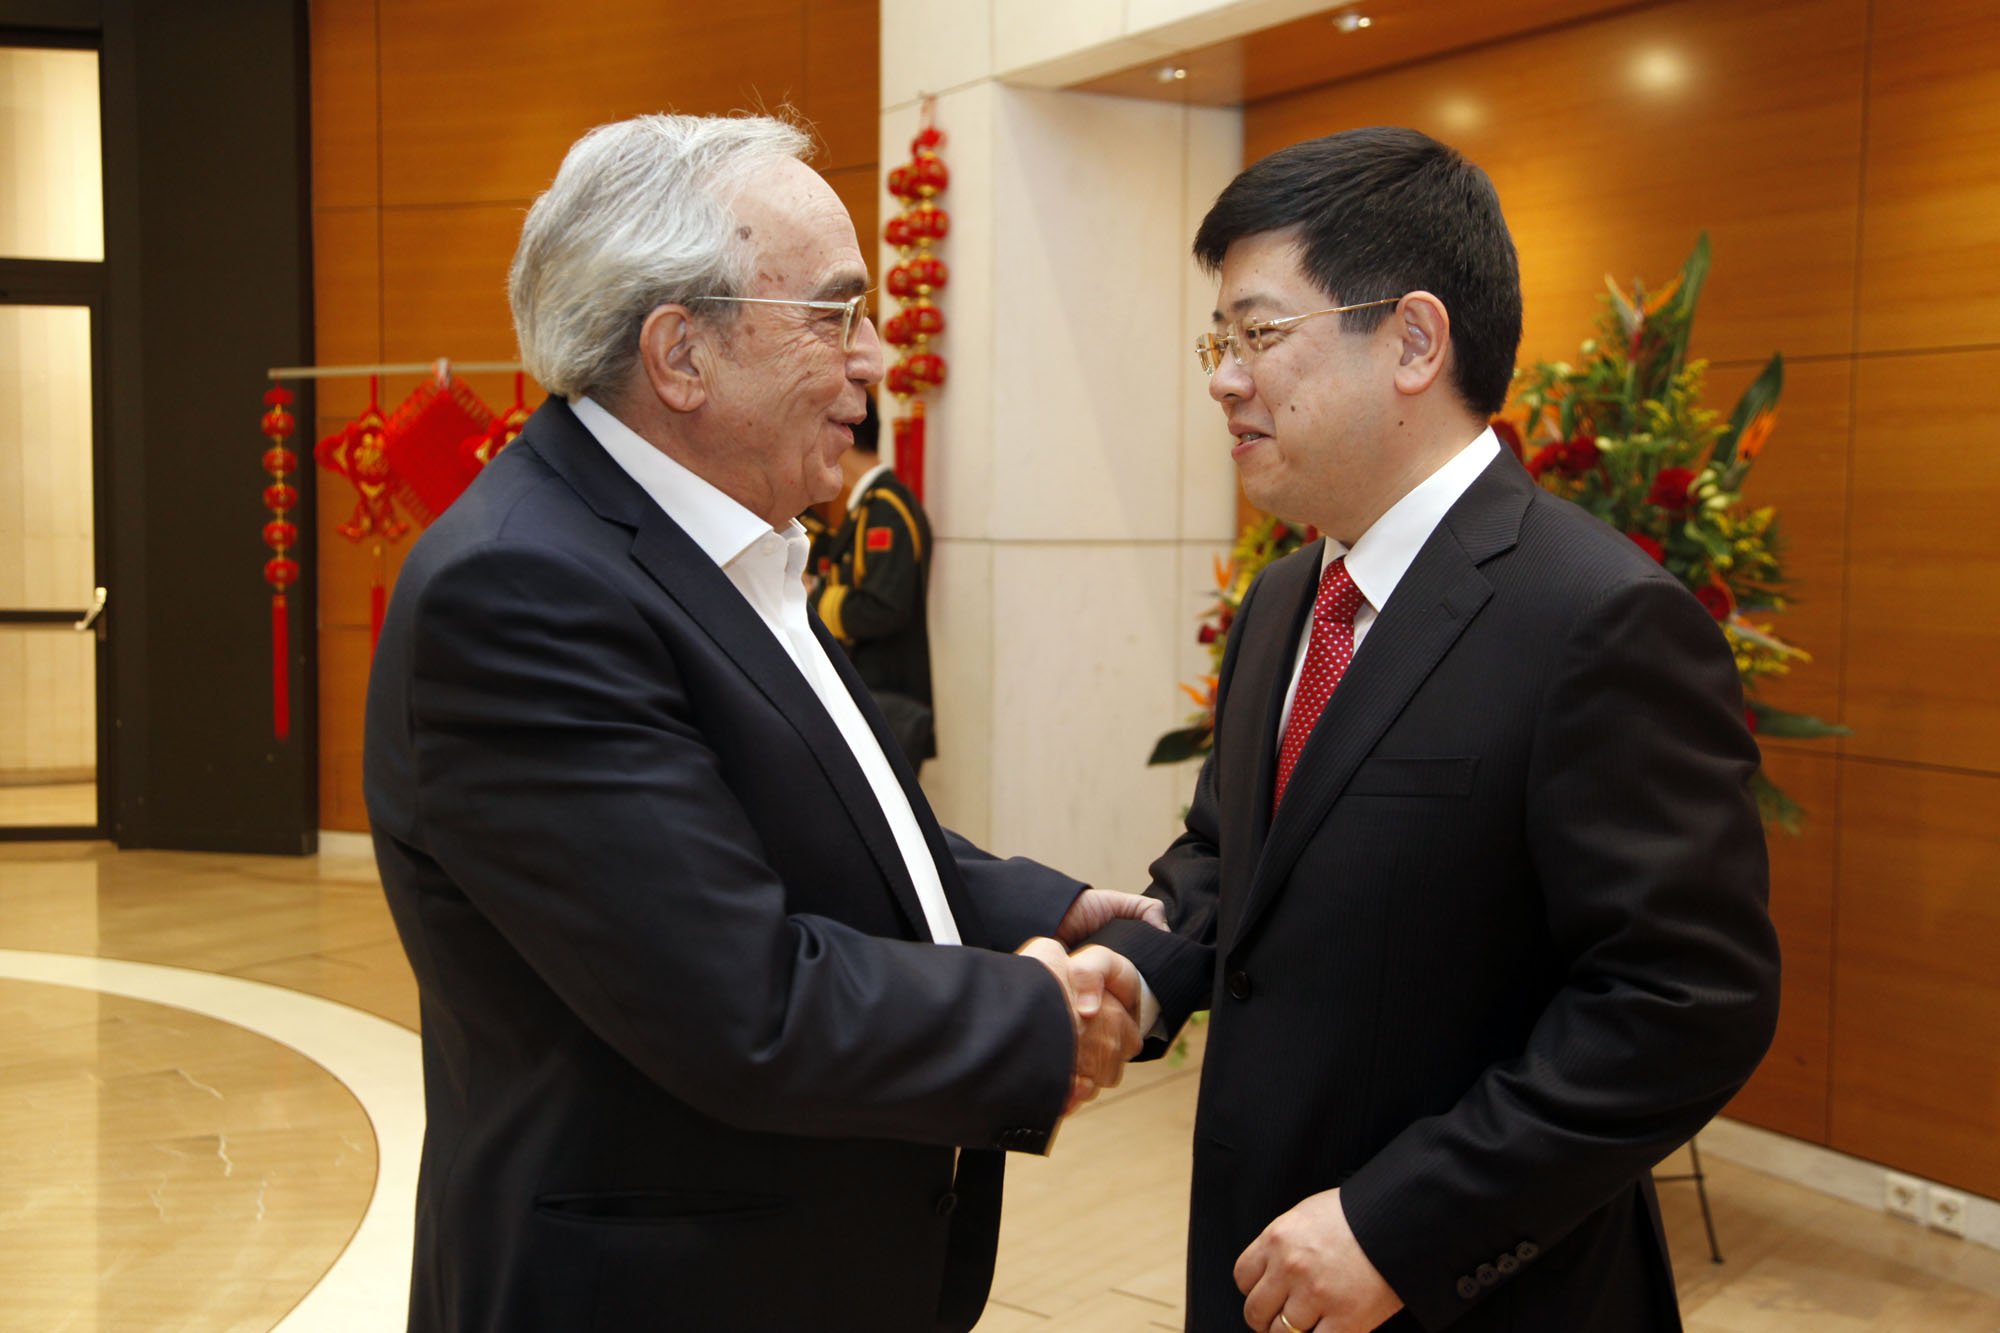 Ο Υπουργός Πολιτισμού και Αθλητισμού κ. Α. Μπαλτάς στον εορτασμό για την Κινέζικη Πρωτοχρονιά